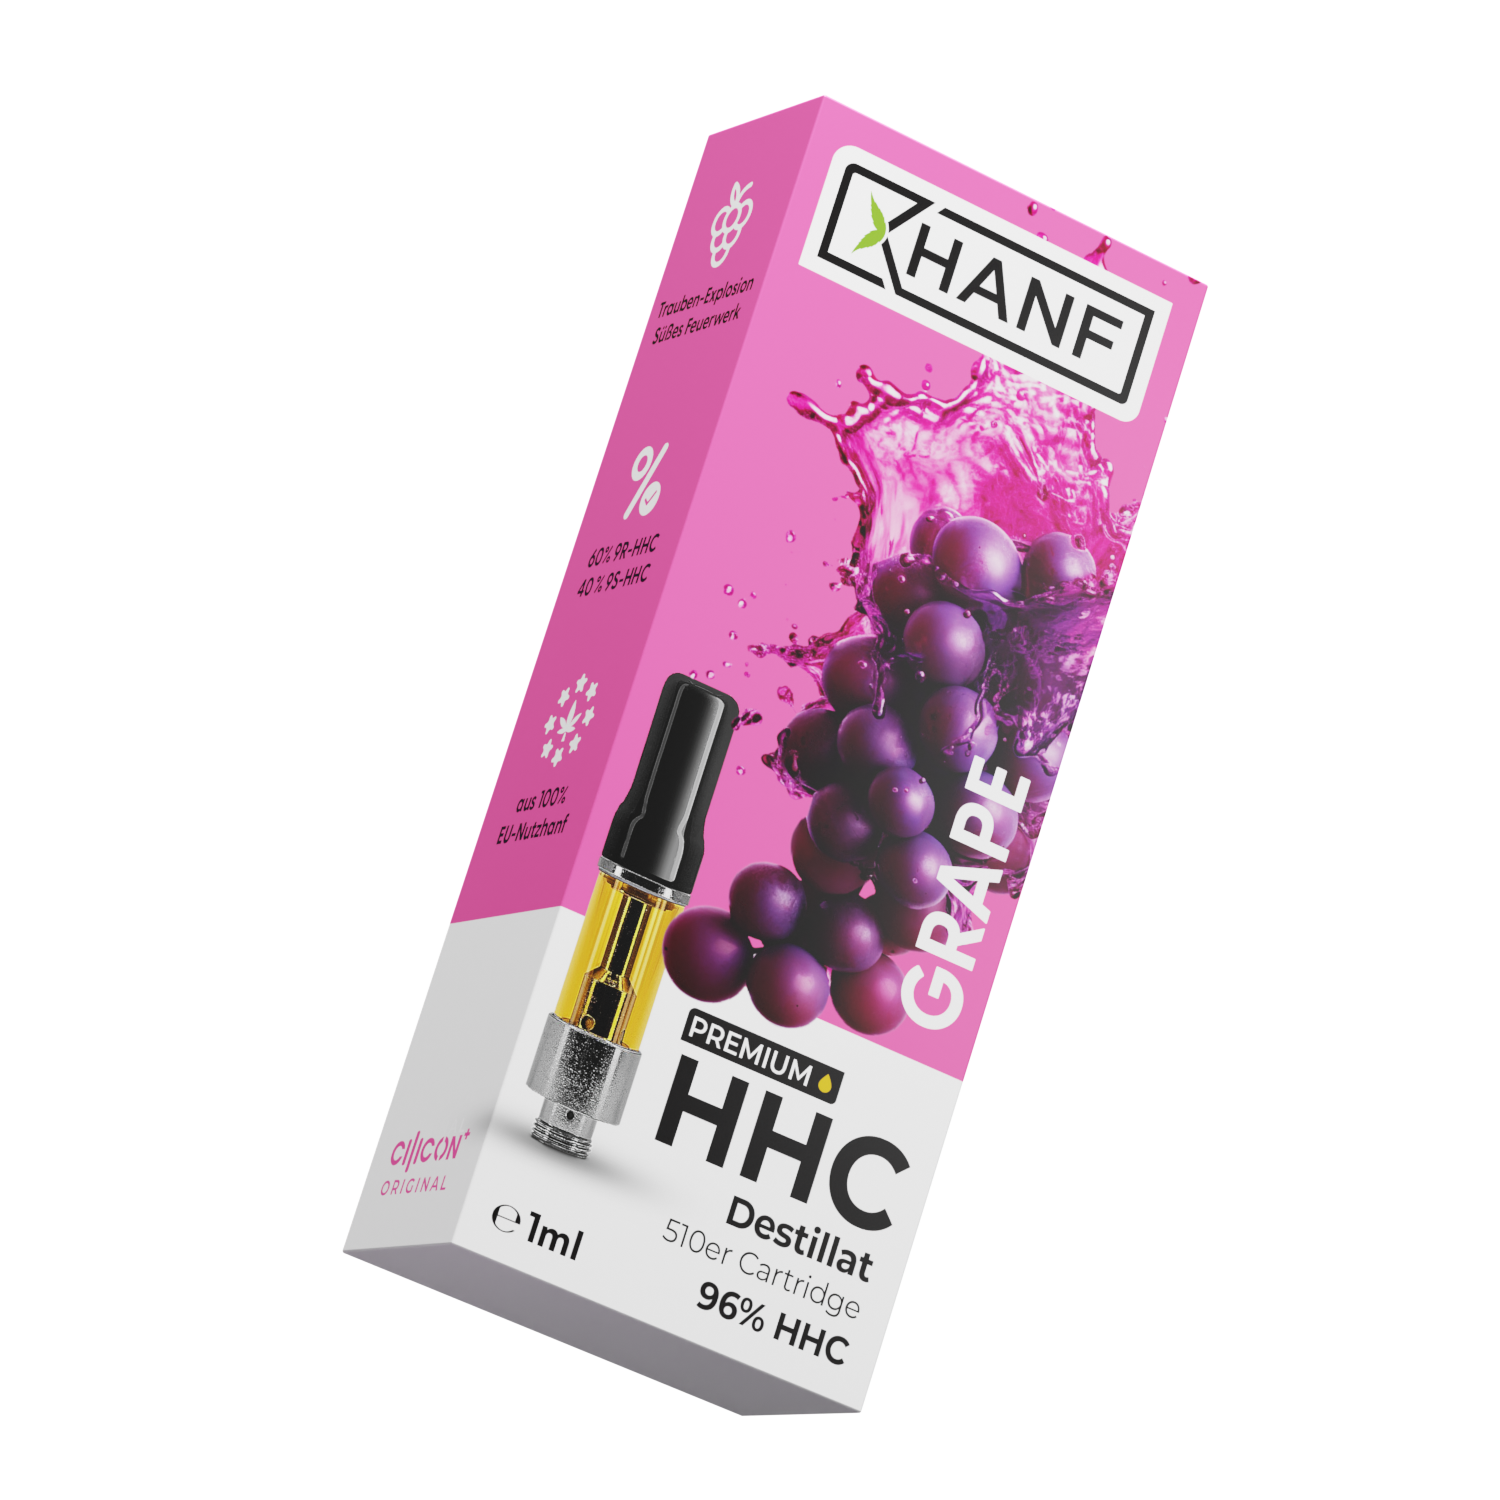 HHC Vape Pen Kartusche - Grape 1ml